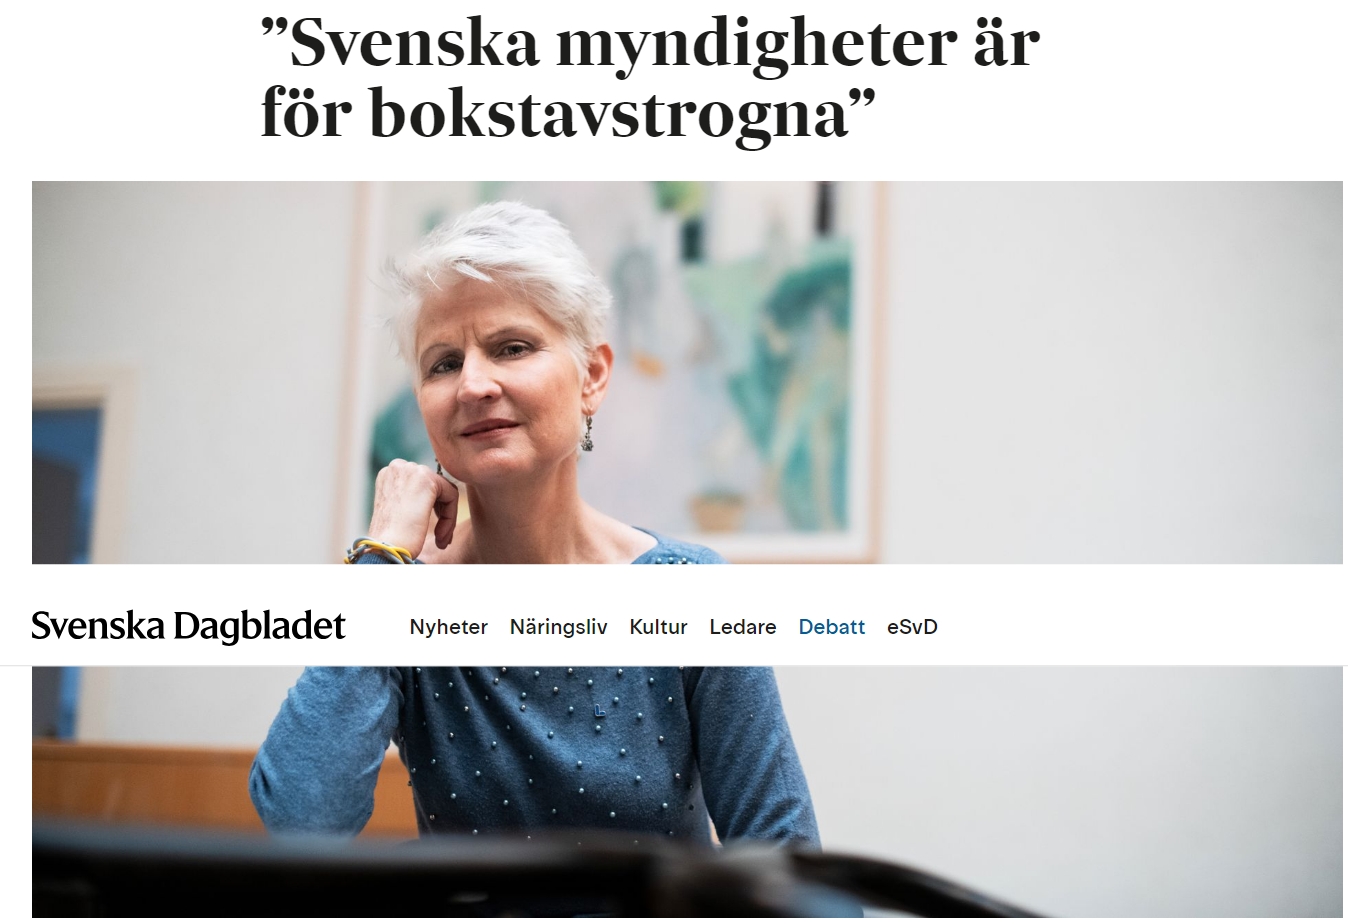 Toppkandidat Anna Maria Corazza Bildt om bokstavstrogna mynidgheter i Svenska Dagbladet